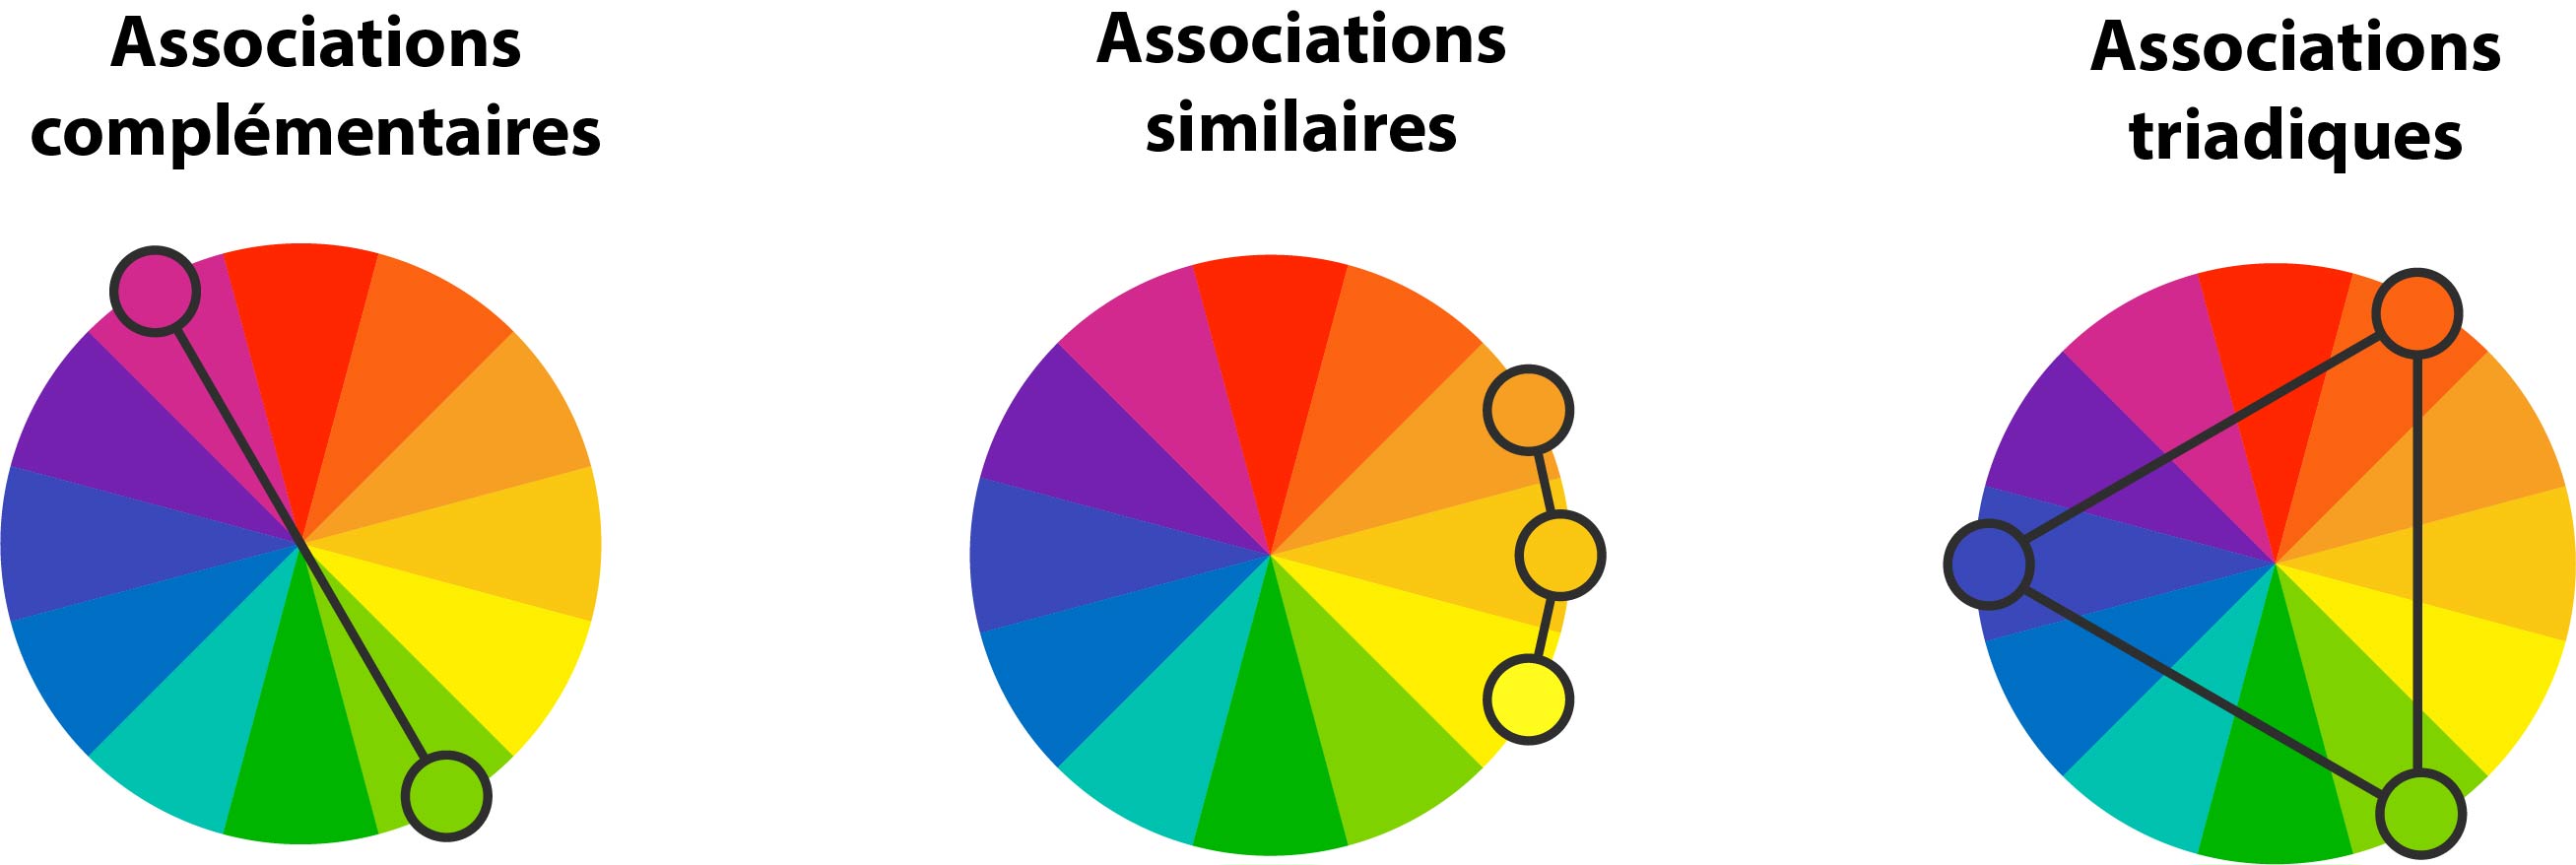 Associations cercle chromatique